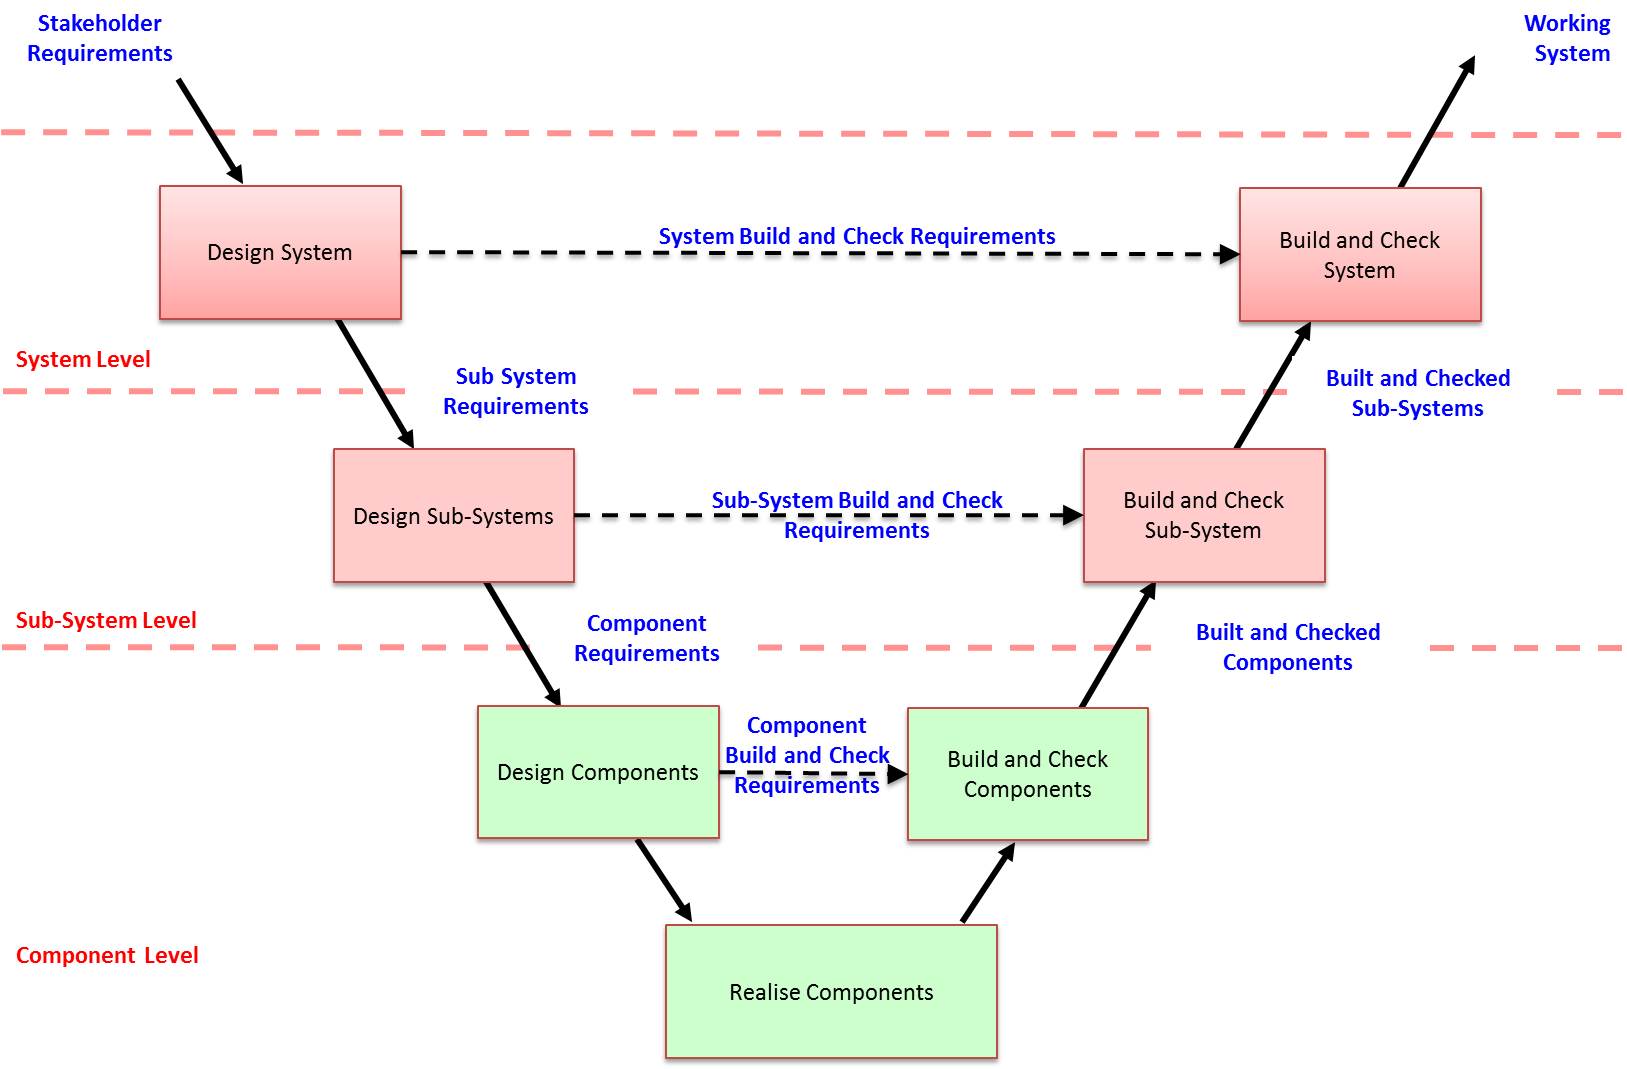 [DIAGRAM] Mechanical Engineers Handbook Diagram - MYDIAGRAM.ONLINE